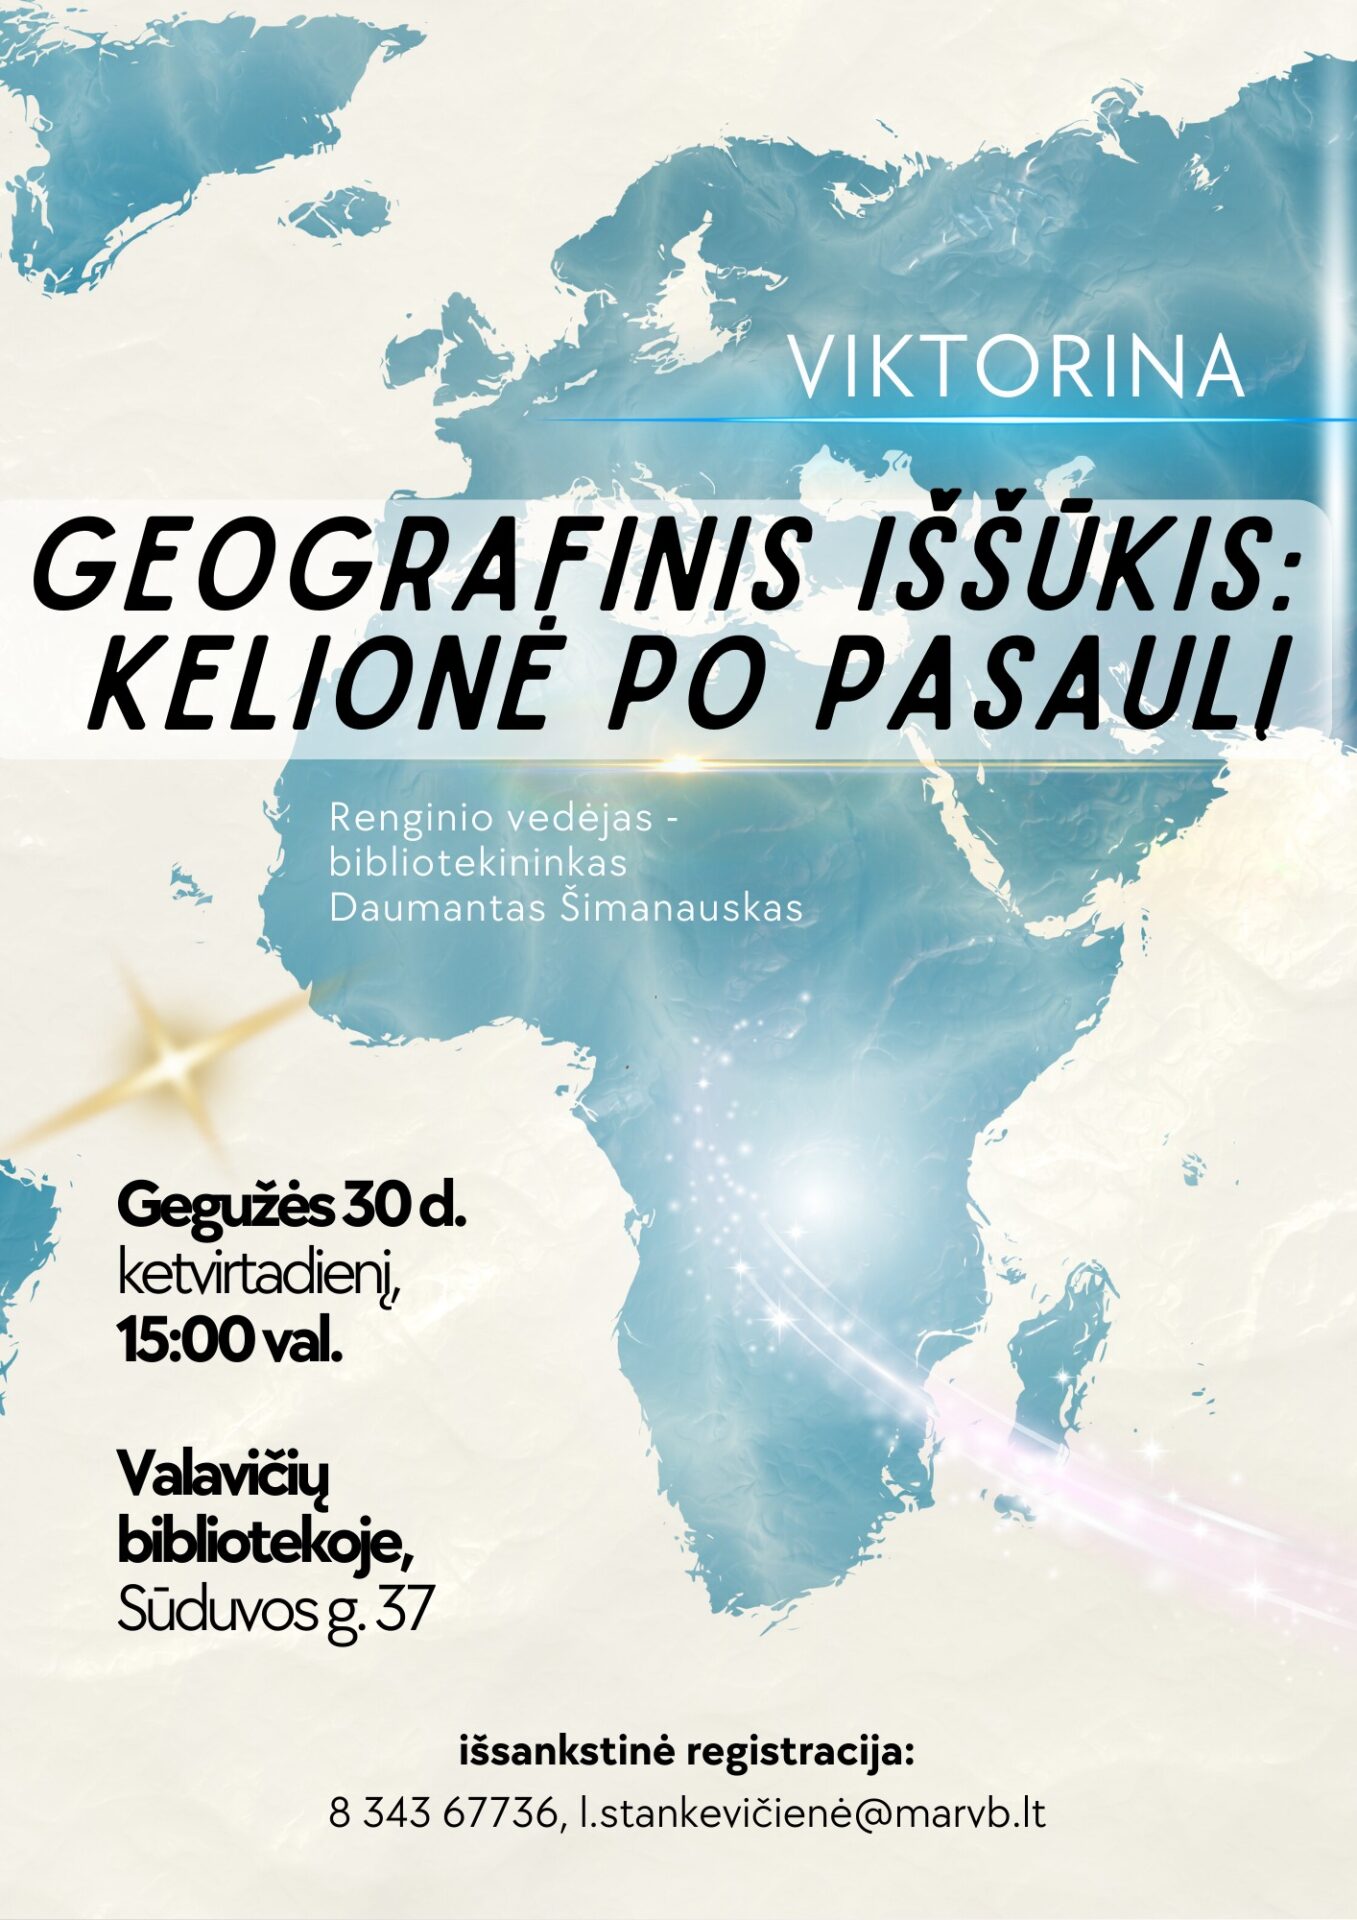 Viktorina „Geografinis iššūkis - kelionė po pasaulį“